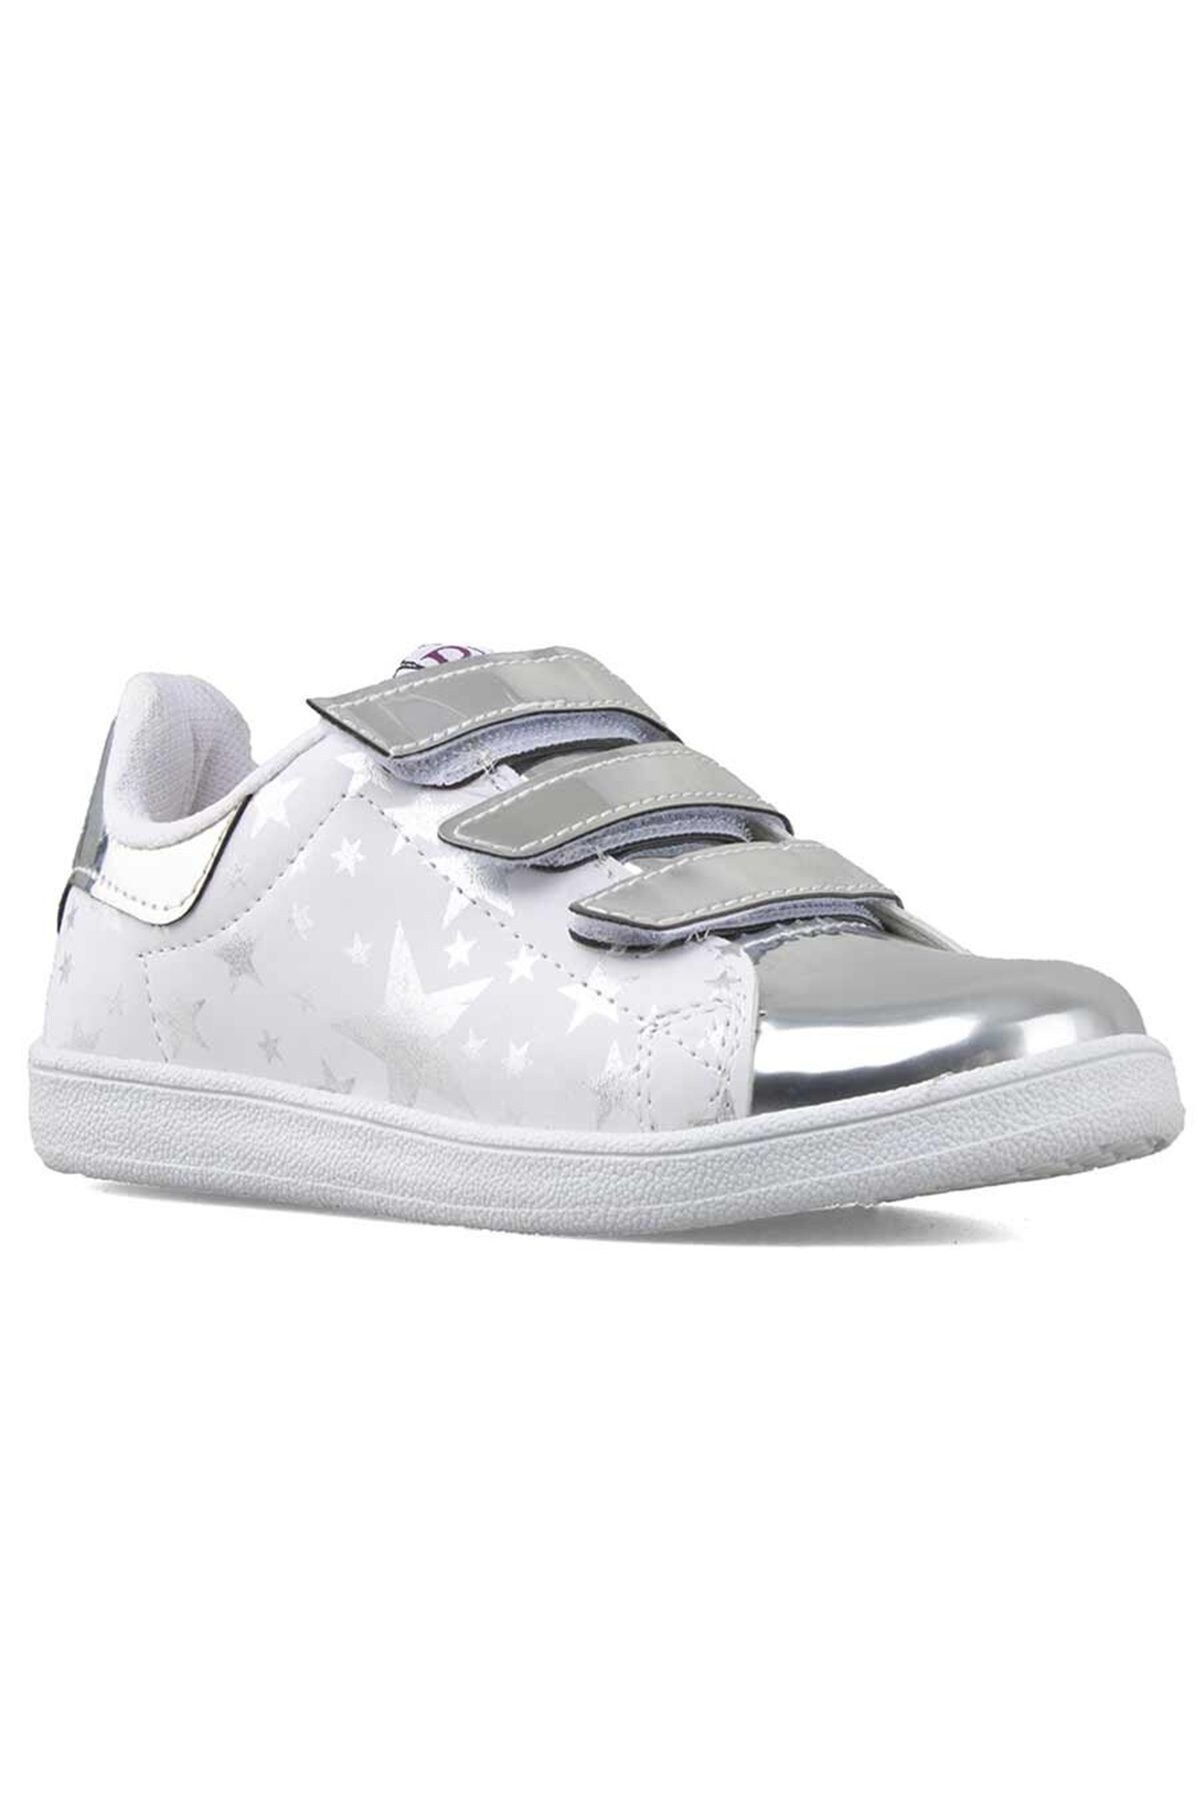 MICKEY kız çocuk günlük kullanım yeni sezon gümüş-beyaz renk lepetit flet ayakkabı